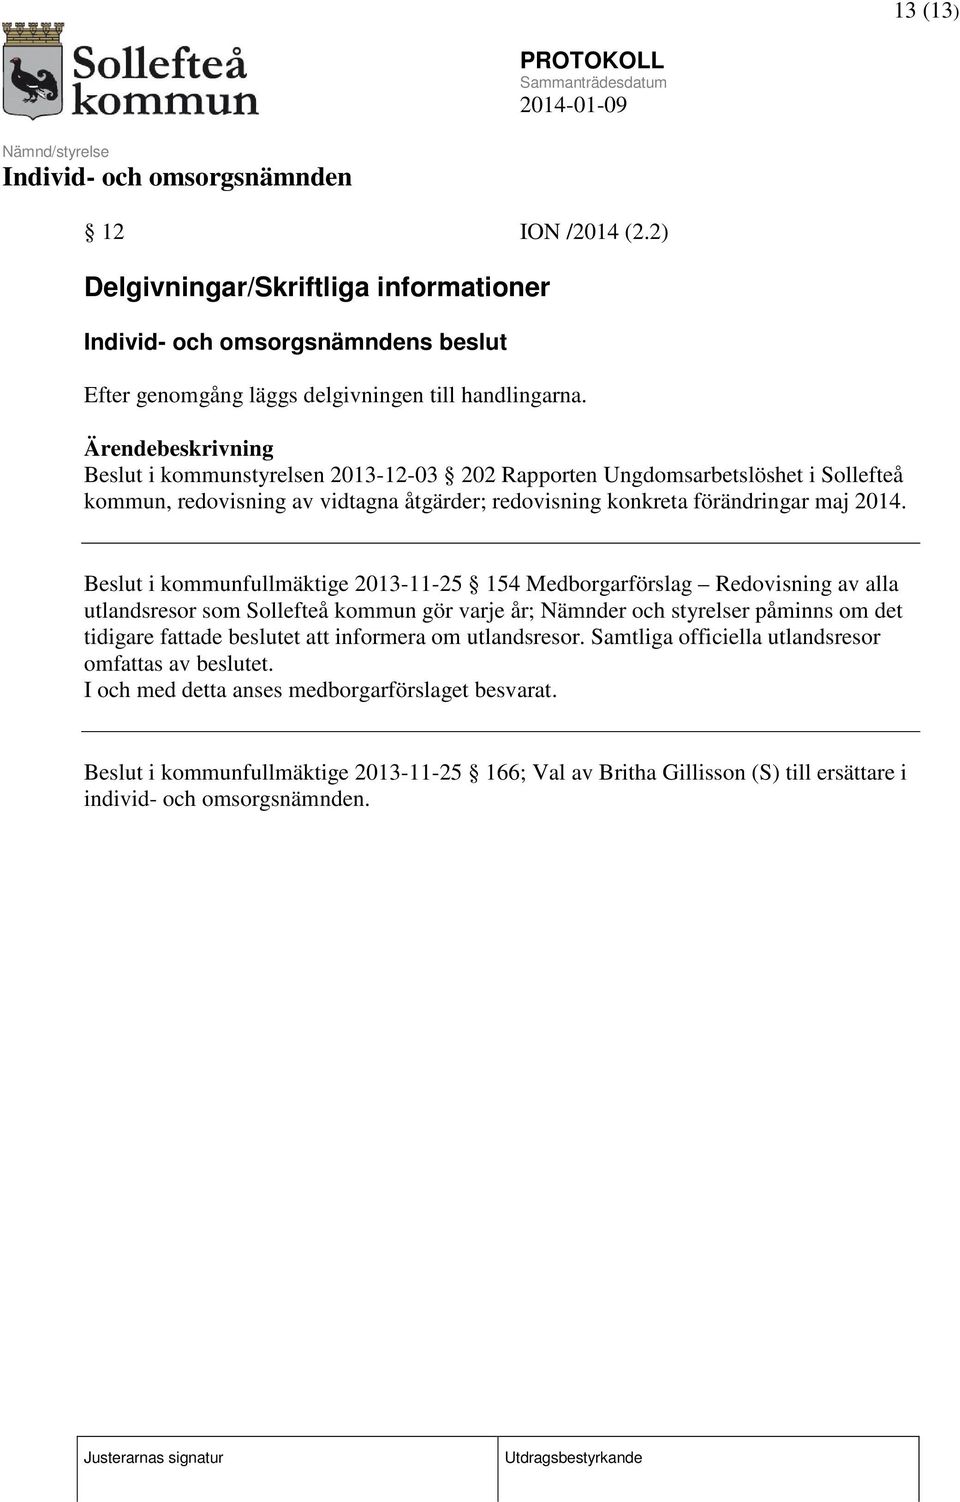 Beslut i kommunfullmäktige 2013-11-25 154 Medborgarförslag Redovisning av alla utlandsresor som Sollefteå kommun gör varje år; Nämnder och styrelser påminns om det tidigare fattade